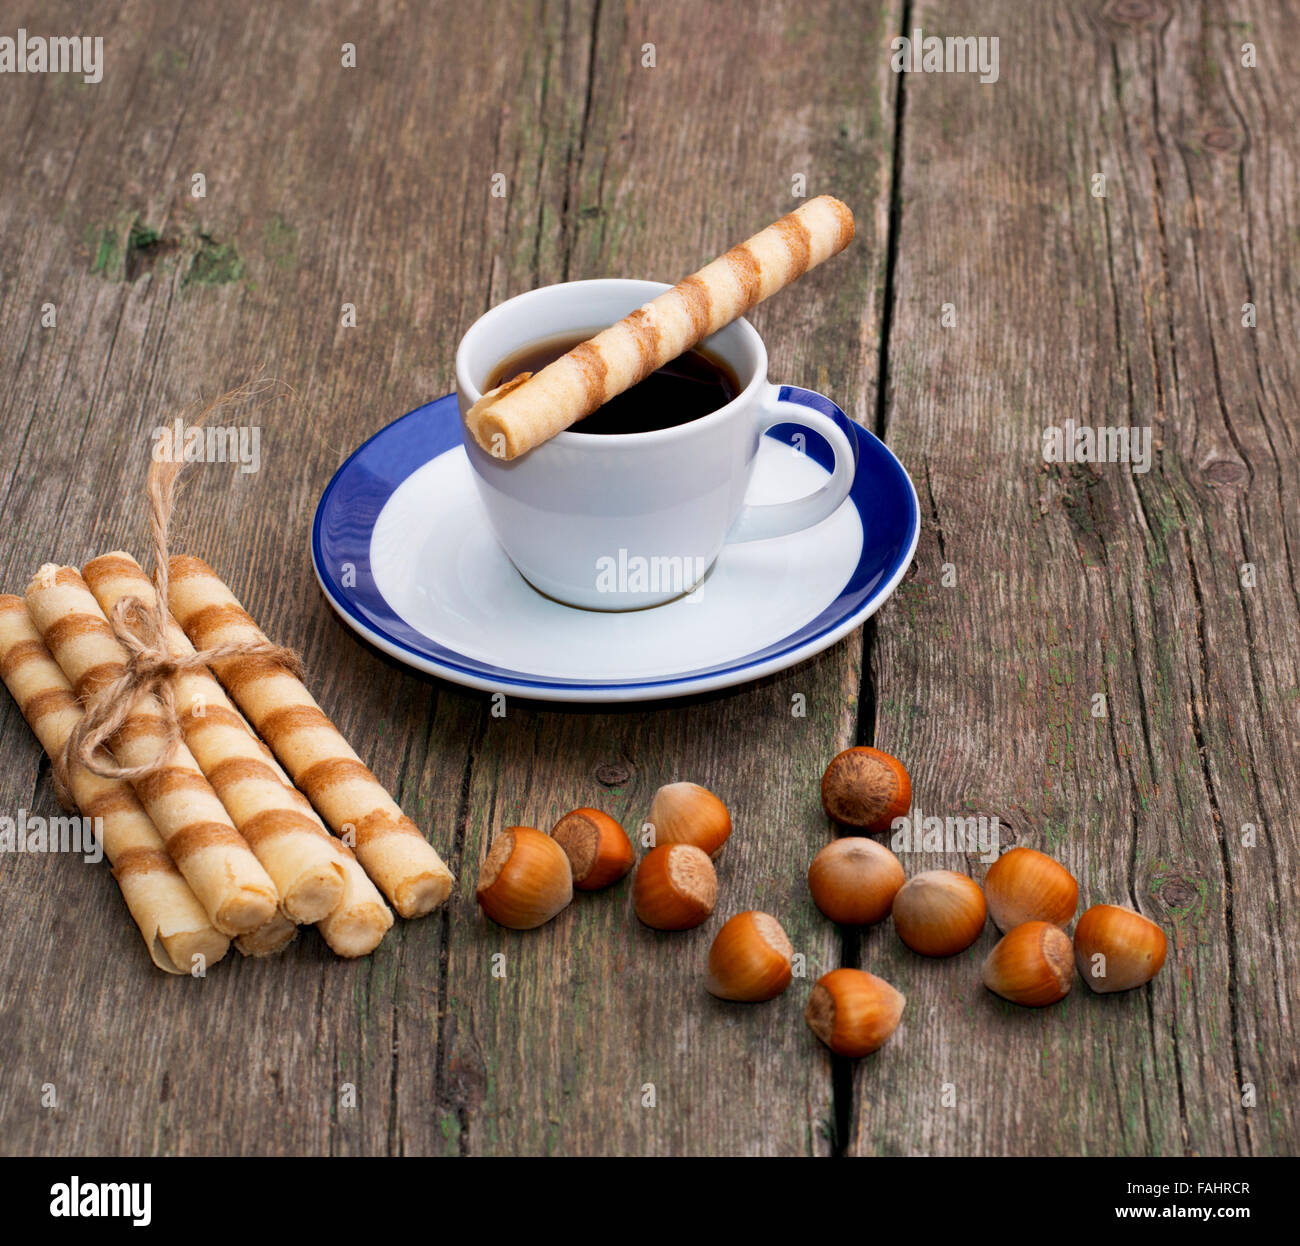 Le café, la cuisson dans la forme de tubules et nucules, sur une table en bois Banque D'Images